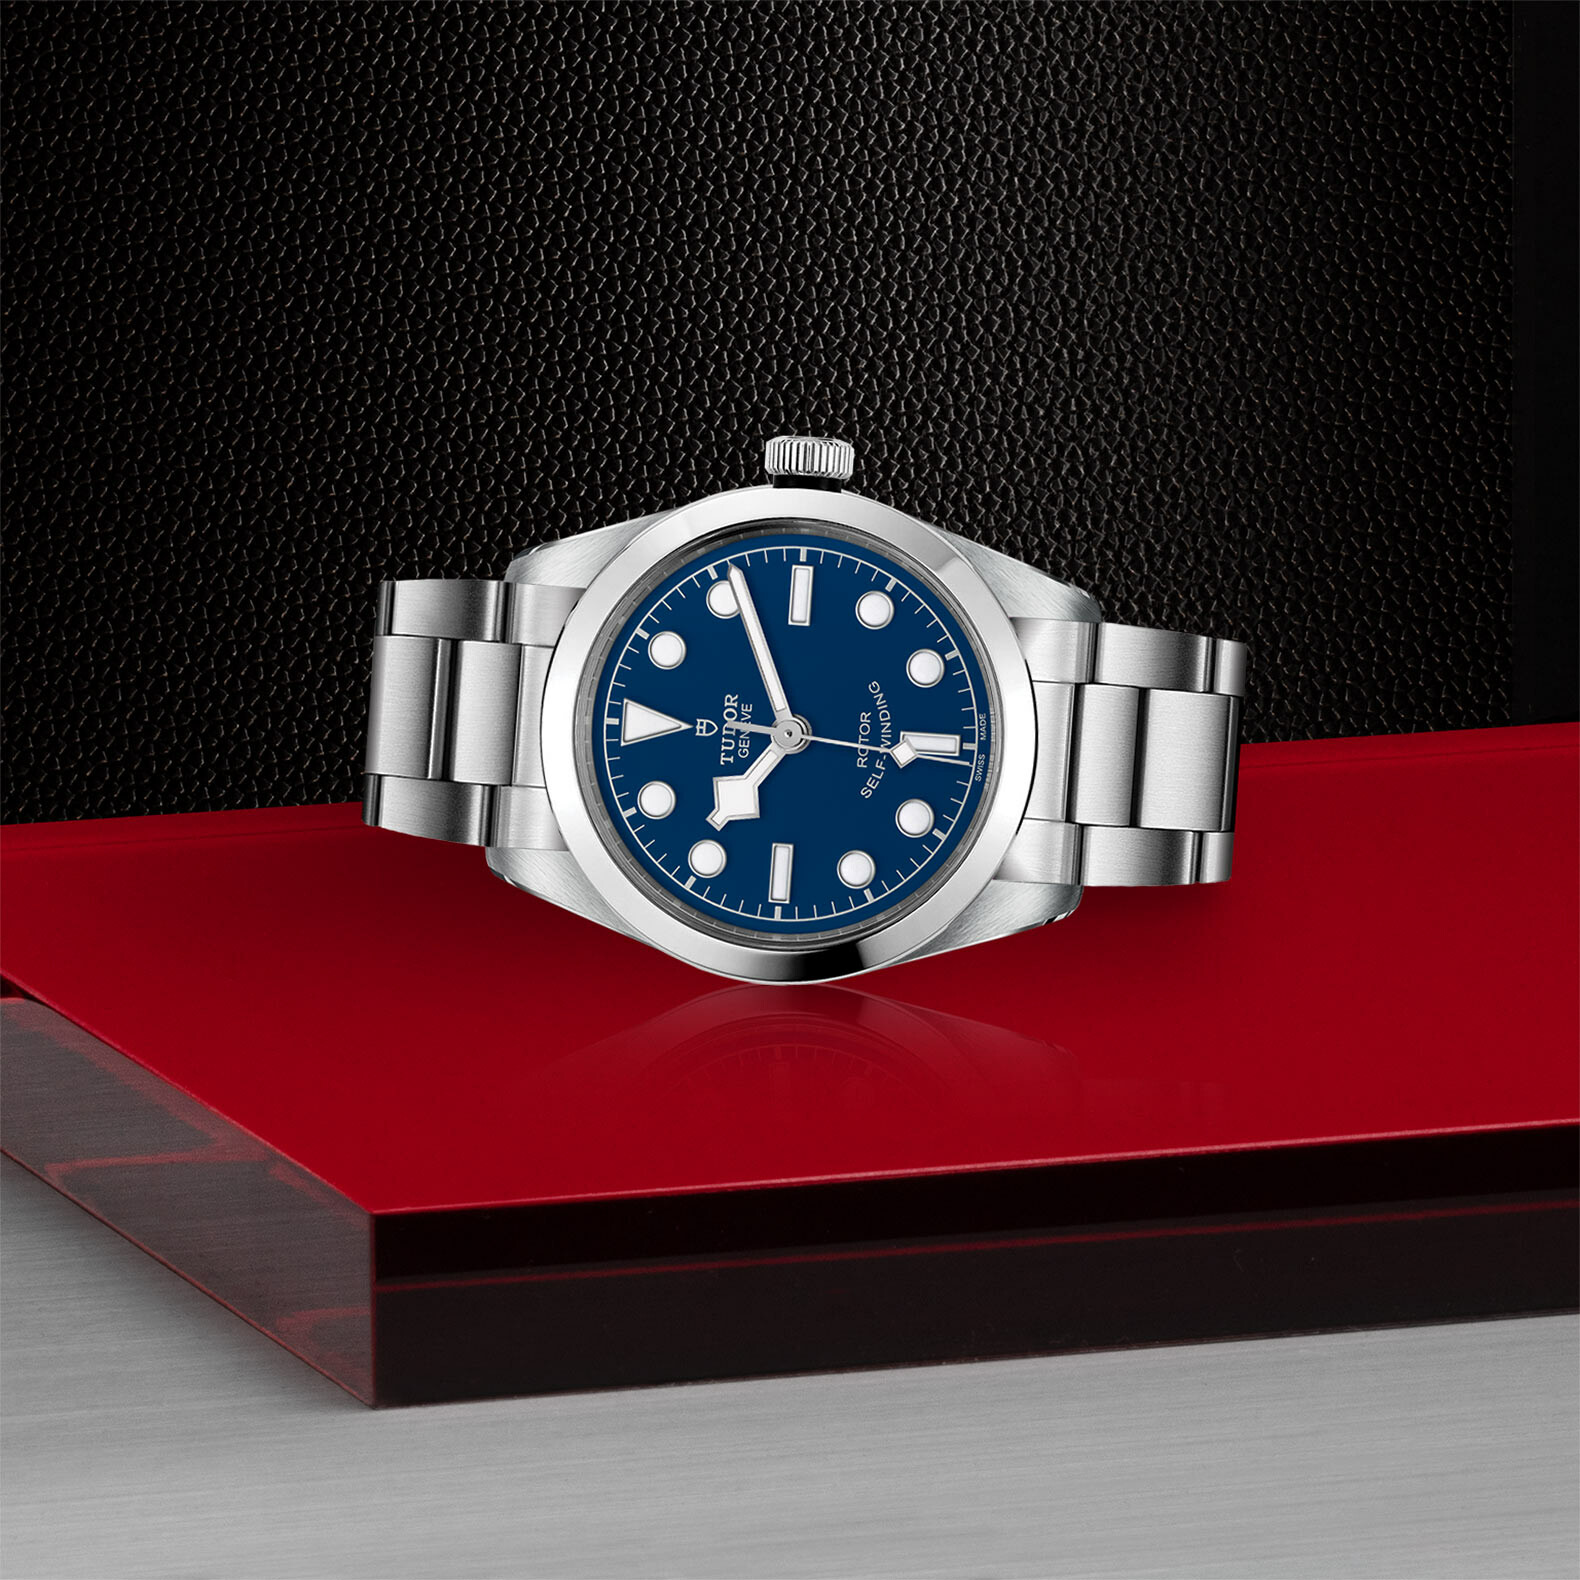 Purchase TUDOR Black Bay 36 watch, 36 mm steel case, steel bracelet